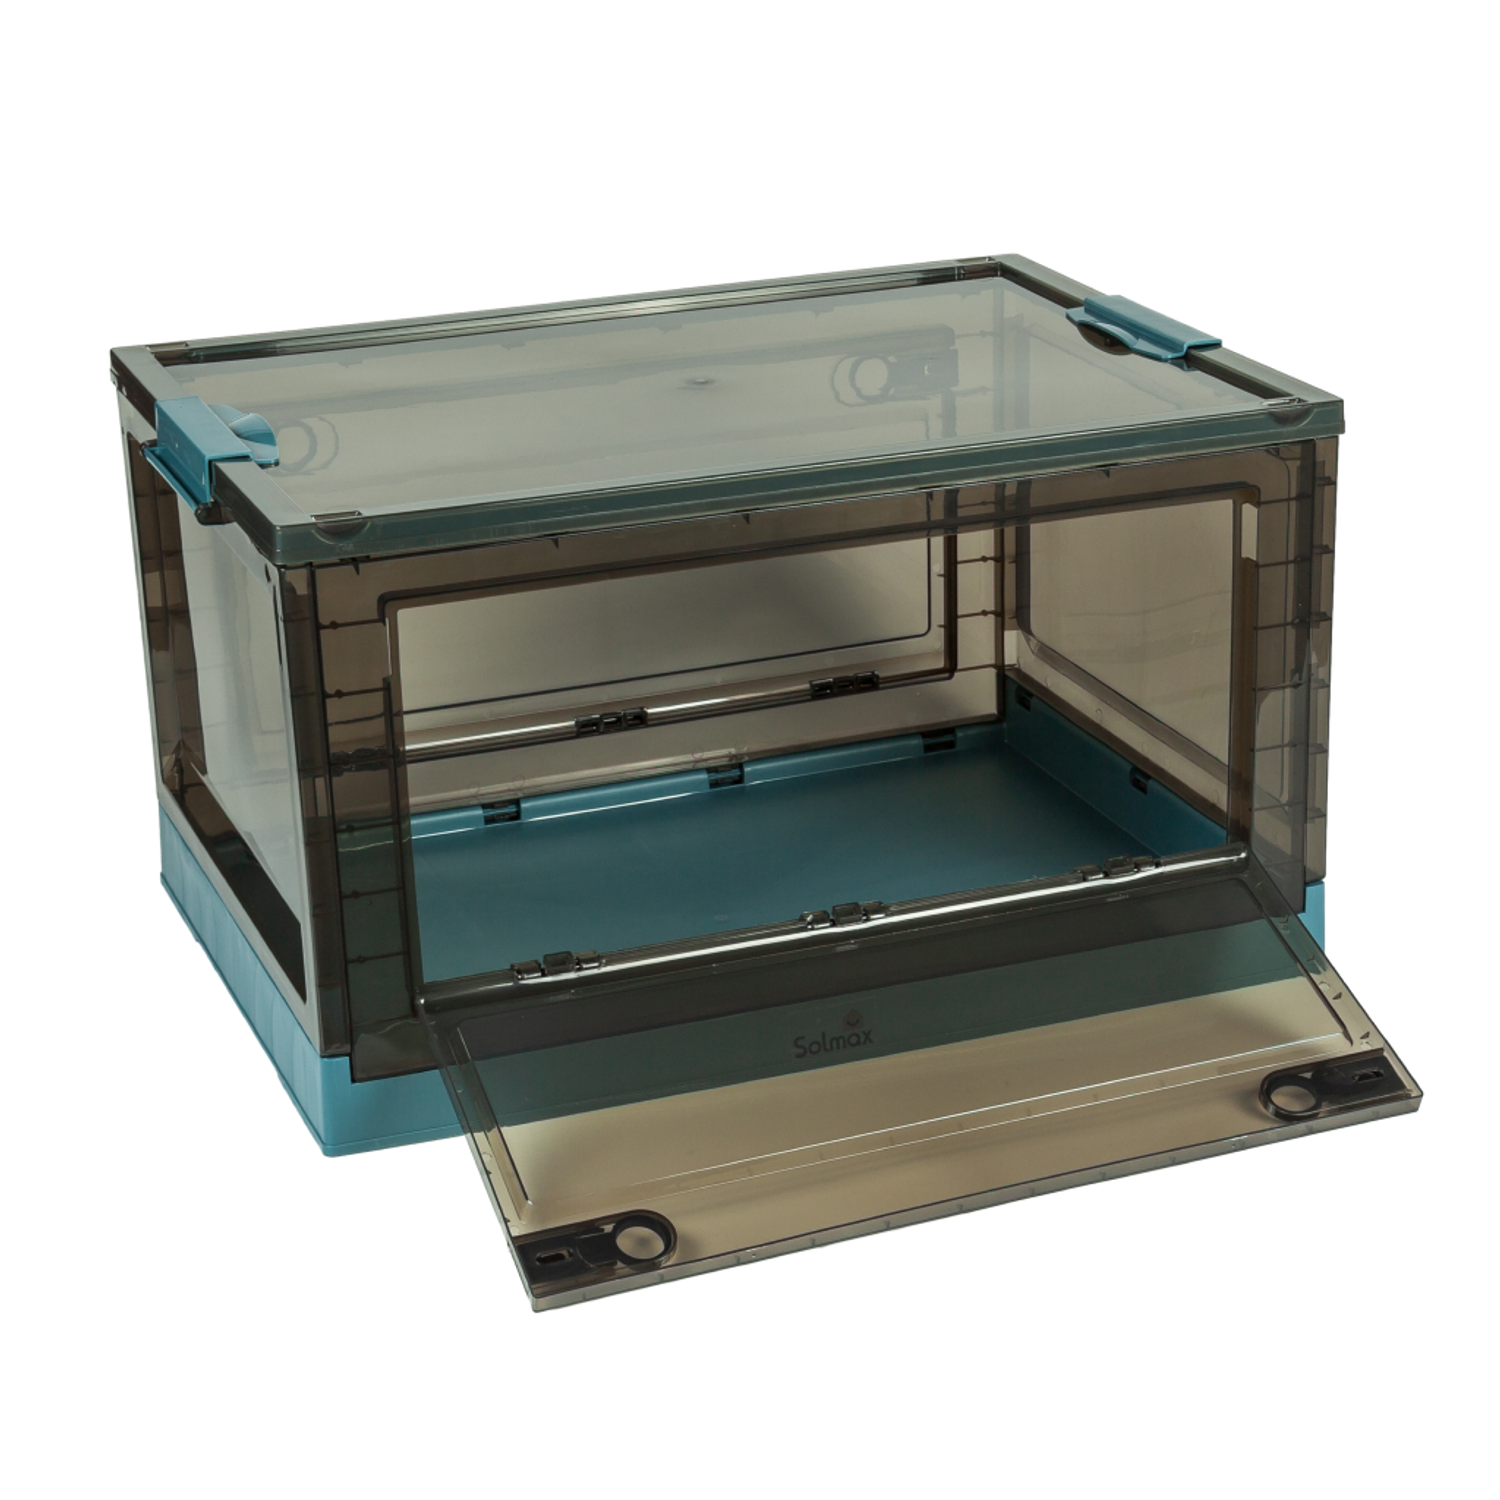 Ящик для хранения вещей Solmax прозрачный контейнер с крышкой на колесах 60х42х35 голубой - фото 8